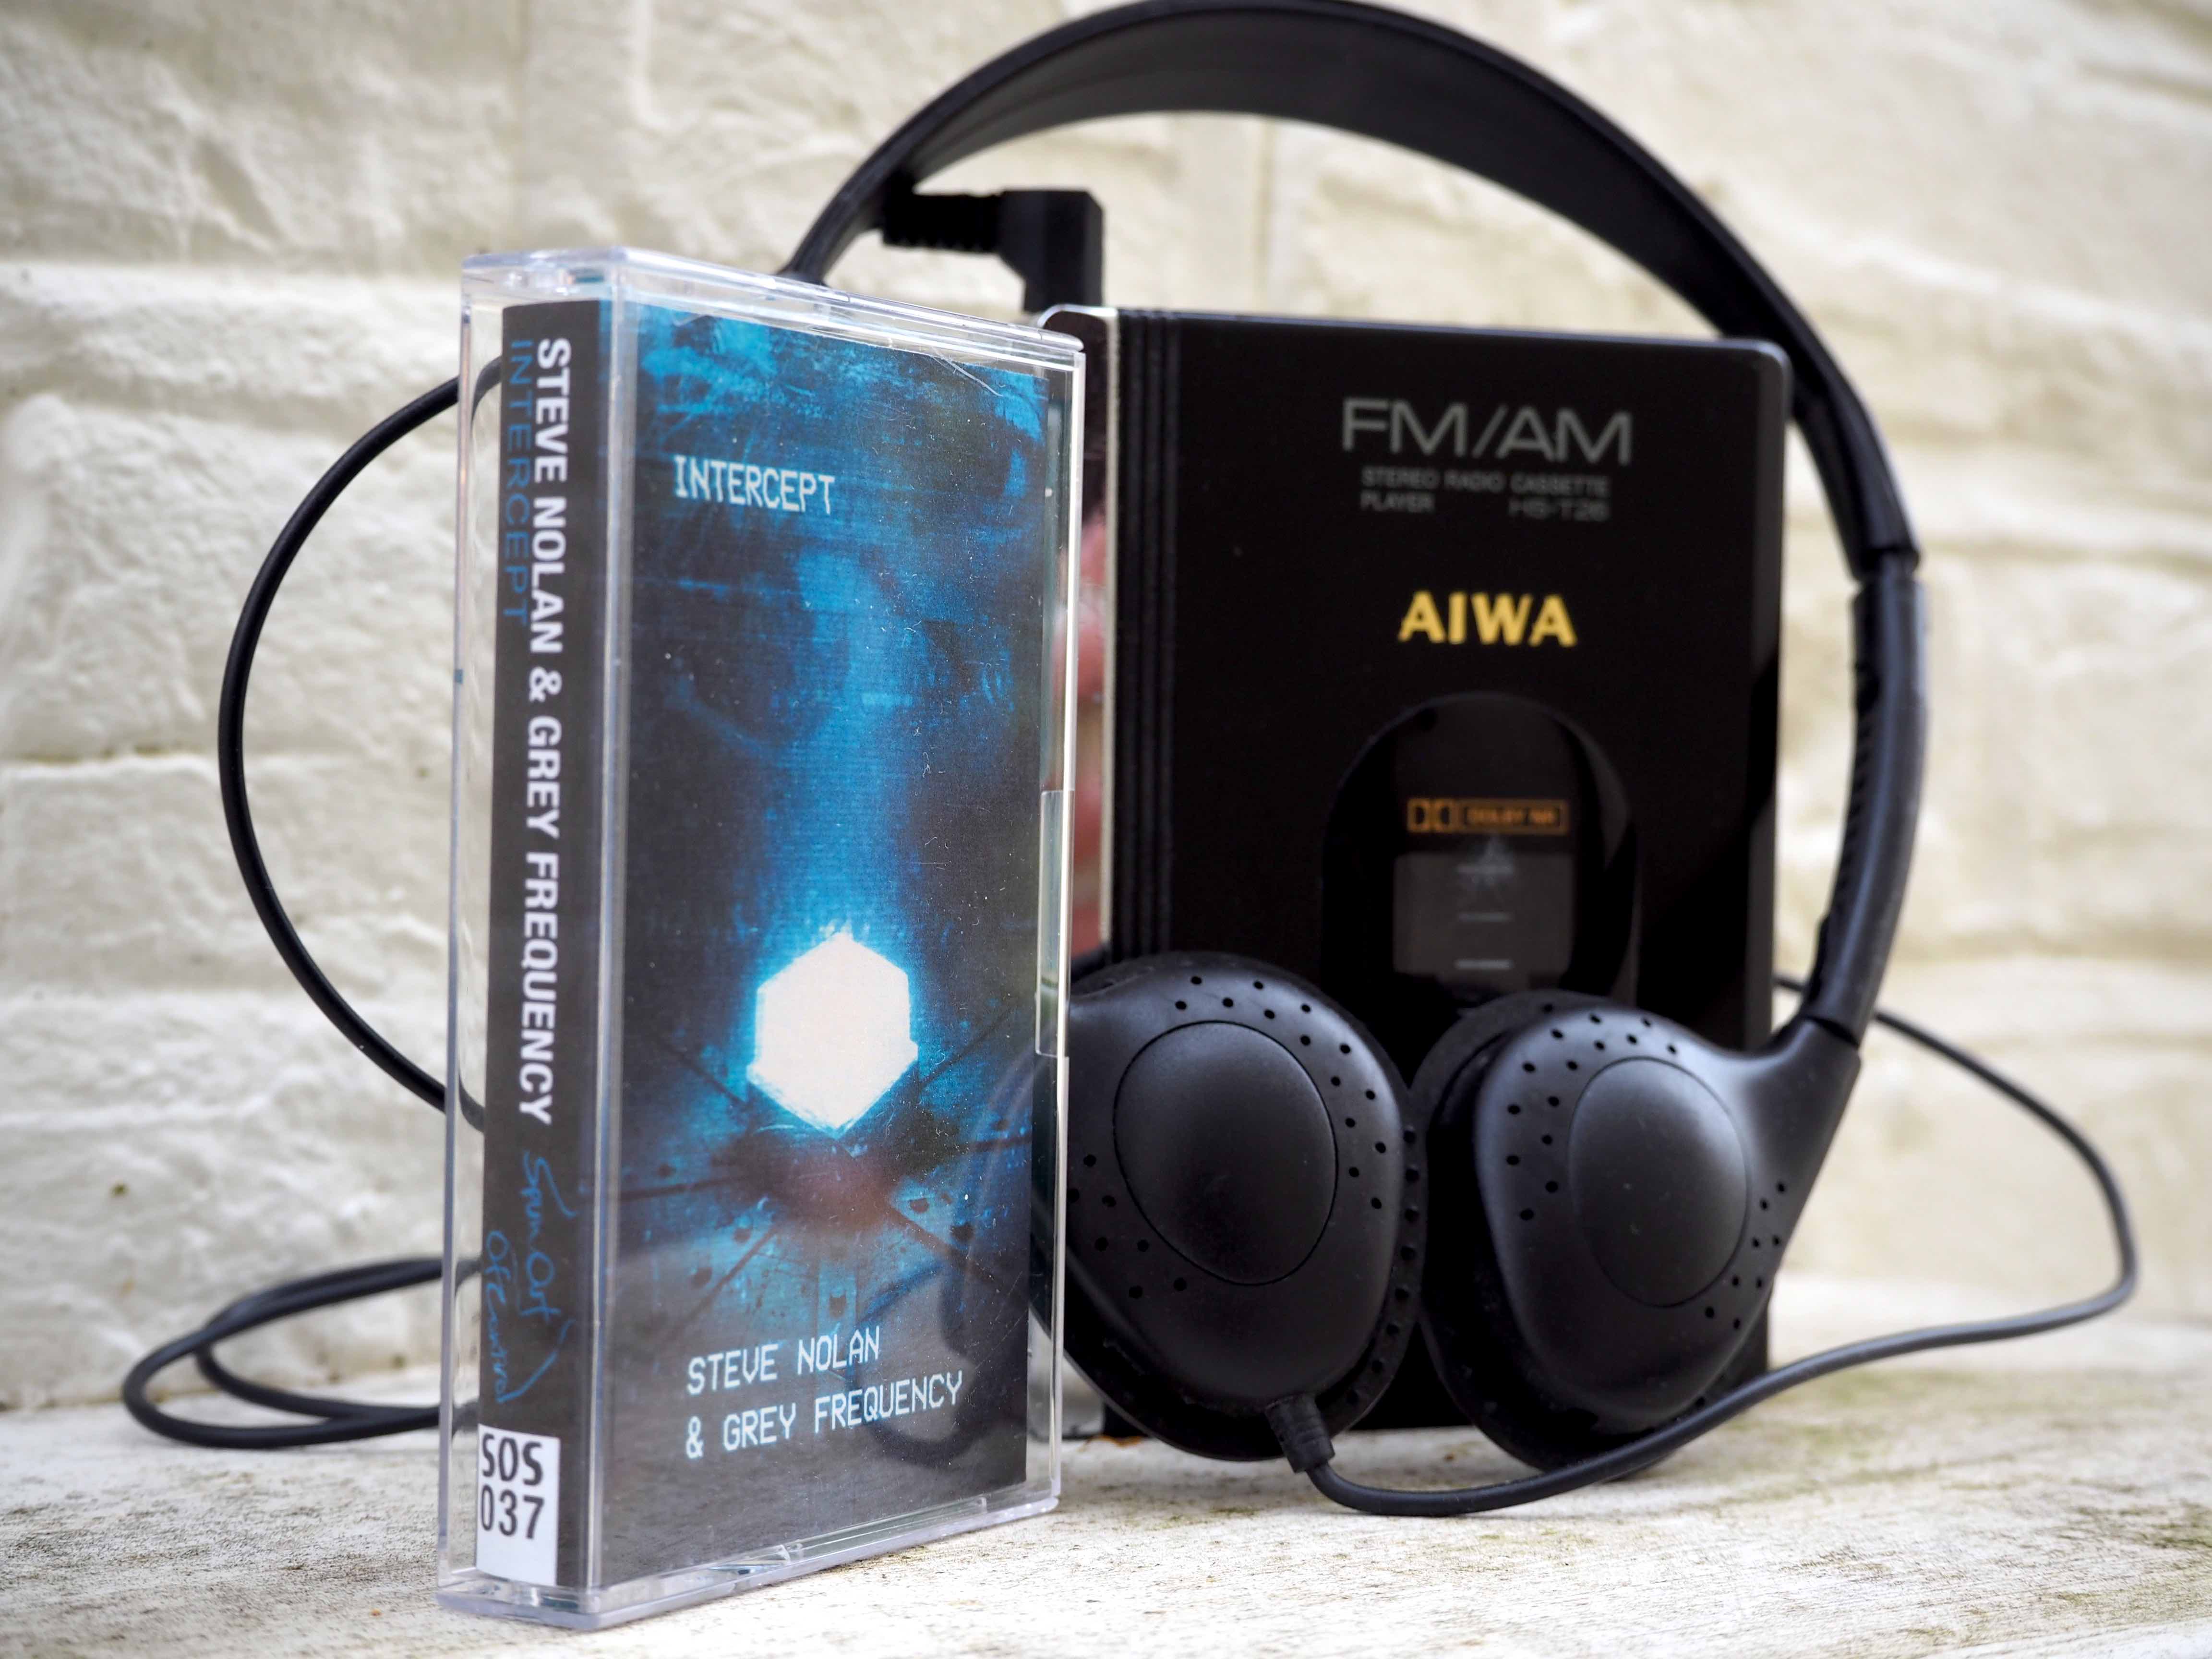 Steve Nolan Grey Frequency Intercept cassette.jpg